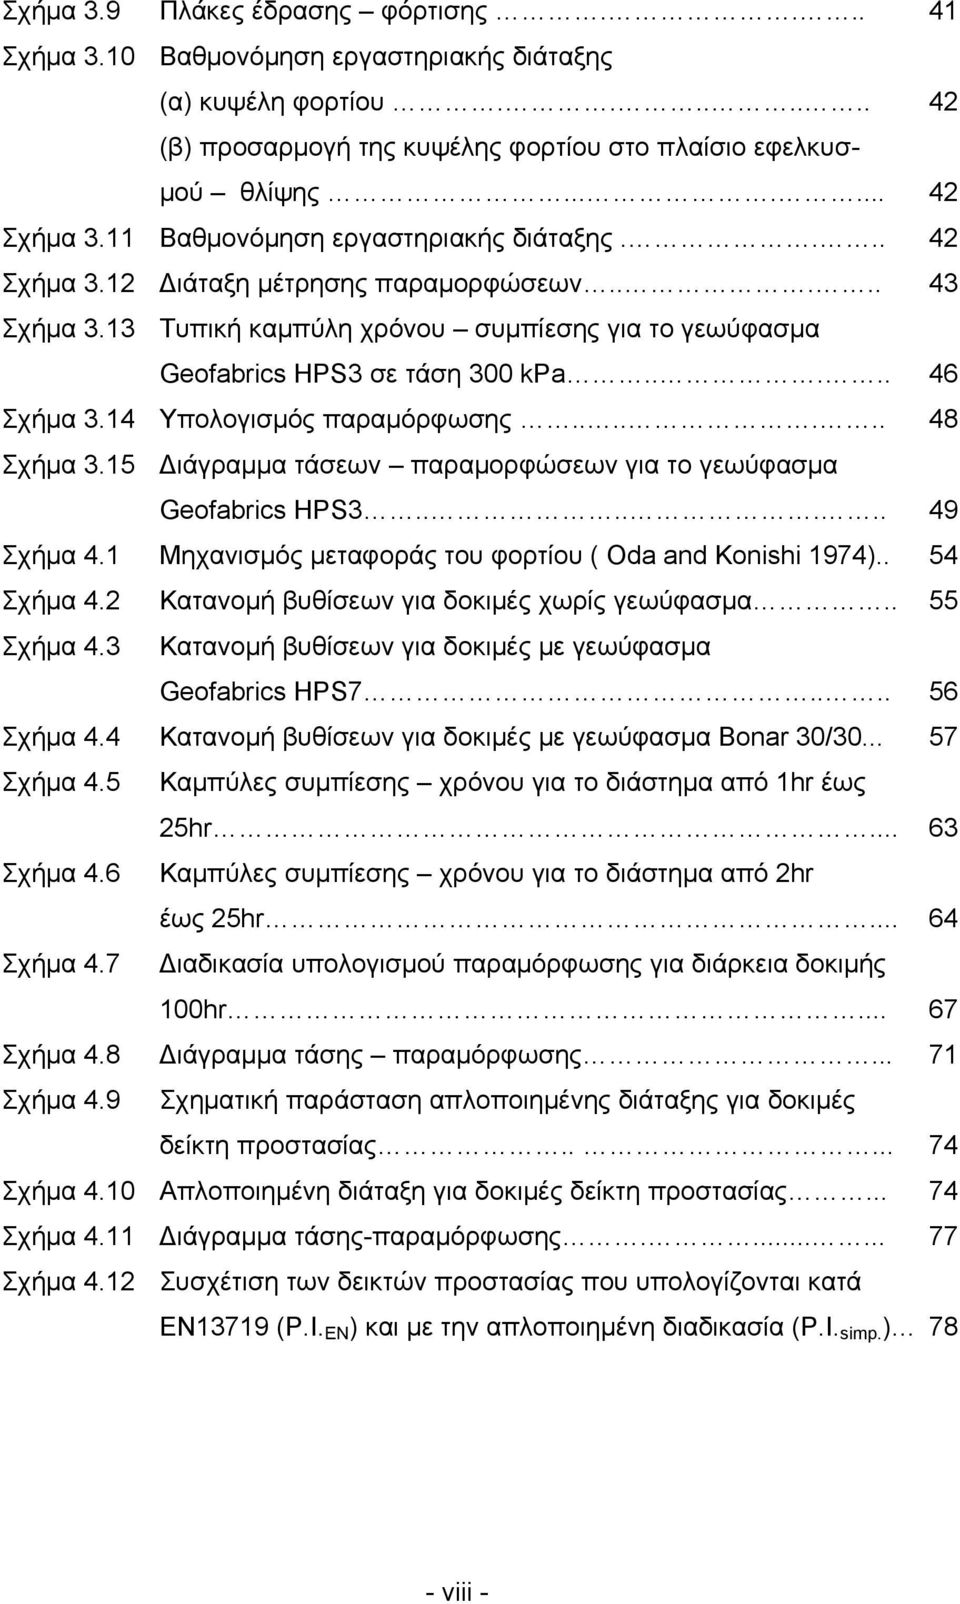 14 Υπολογισμός παραμόρφωσης....... 48 Σχήμα 3.15 Διάγραμμα τάσεων παραμορφώσεων για το γεωύφασμα Geofabrics HPS3....... 49 Σχήμα 4.1 Μηχανισμός μεταφοράς του φορτίου ( Oda and Konishi 1974).